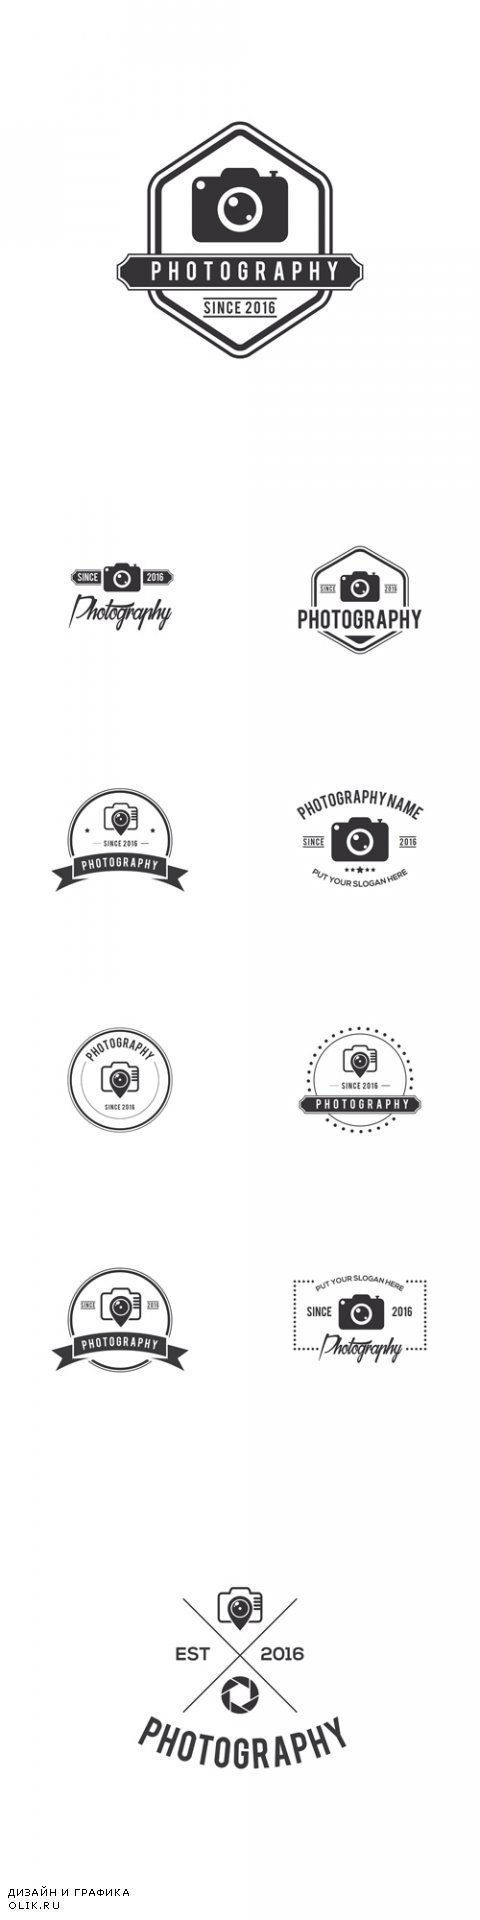 Vector Photography Badges Creative Logo Design